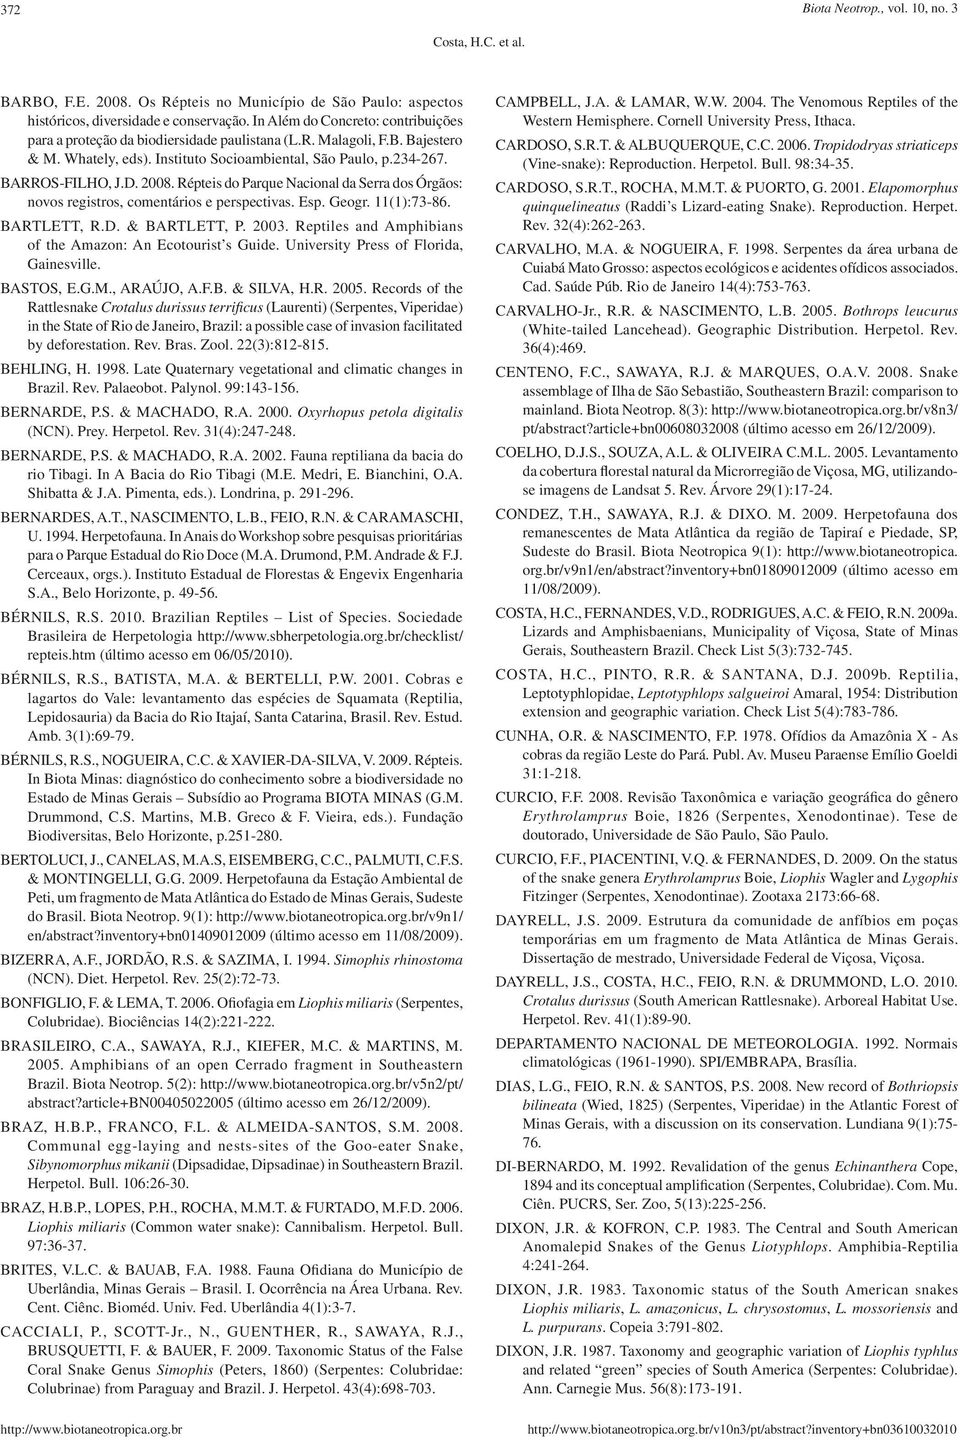 2008. Répteis do Parque Nacional da Serra dos Órgãos: novos registros, comentários e perspectivas. Esp. Geogr. 11(1):73-86. BARTLETT, R.D. & BARTLETT, P. 2003.